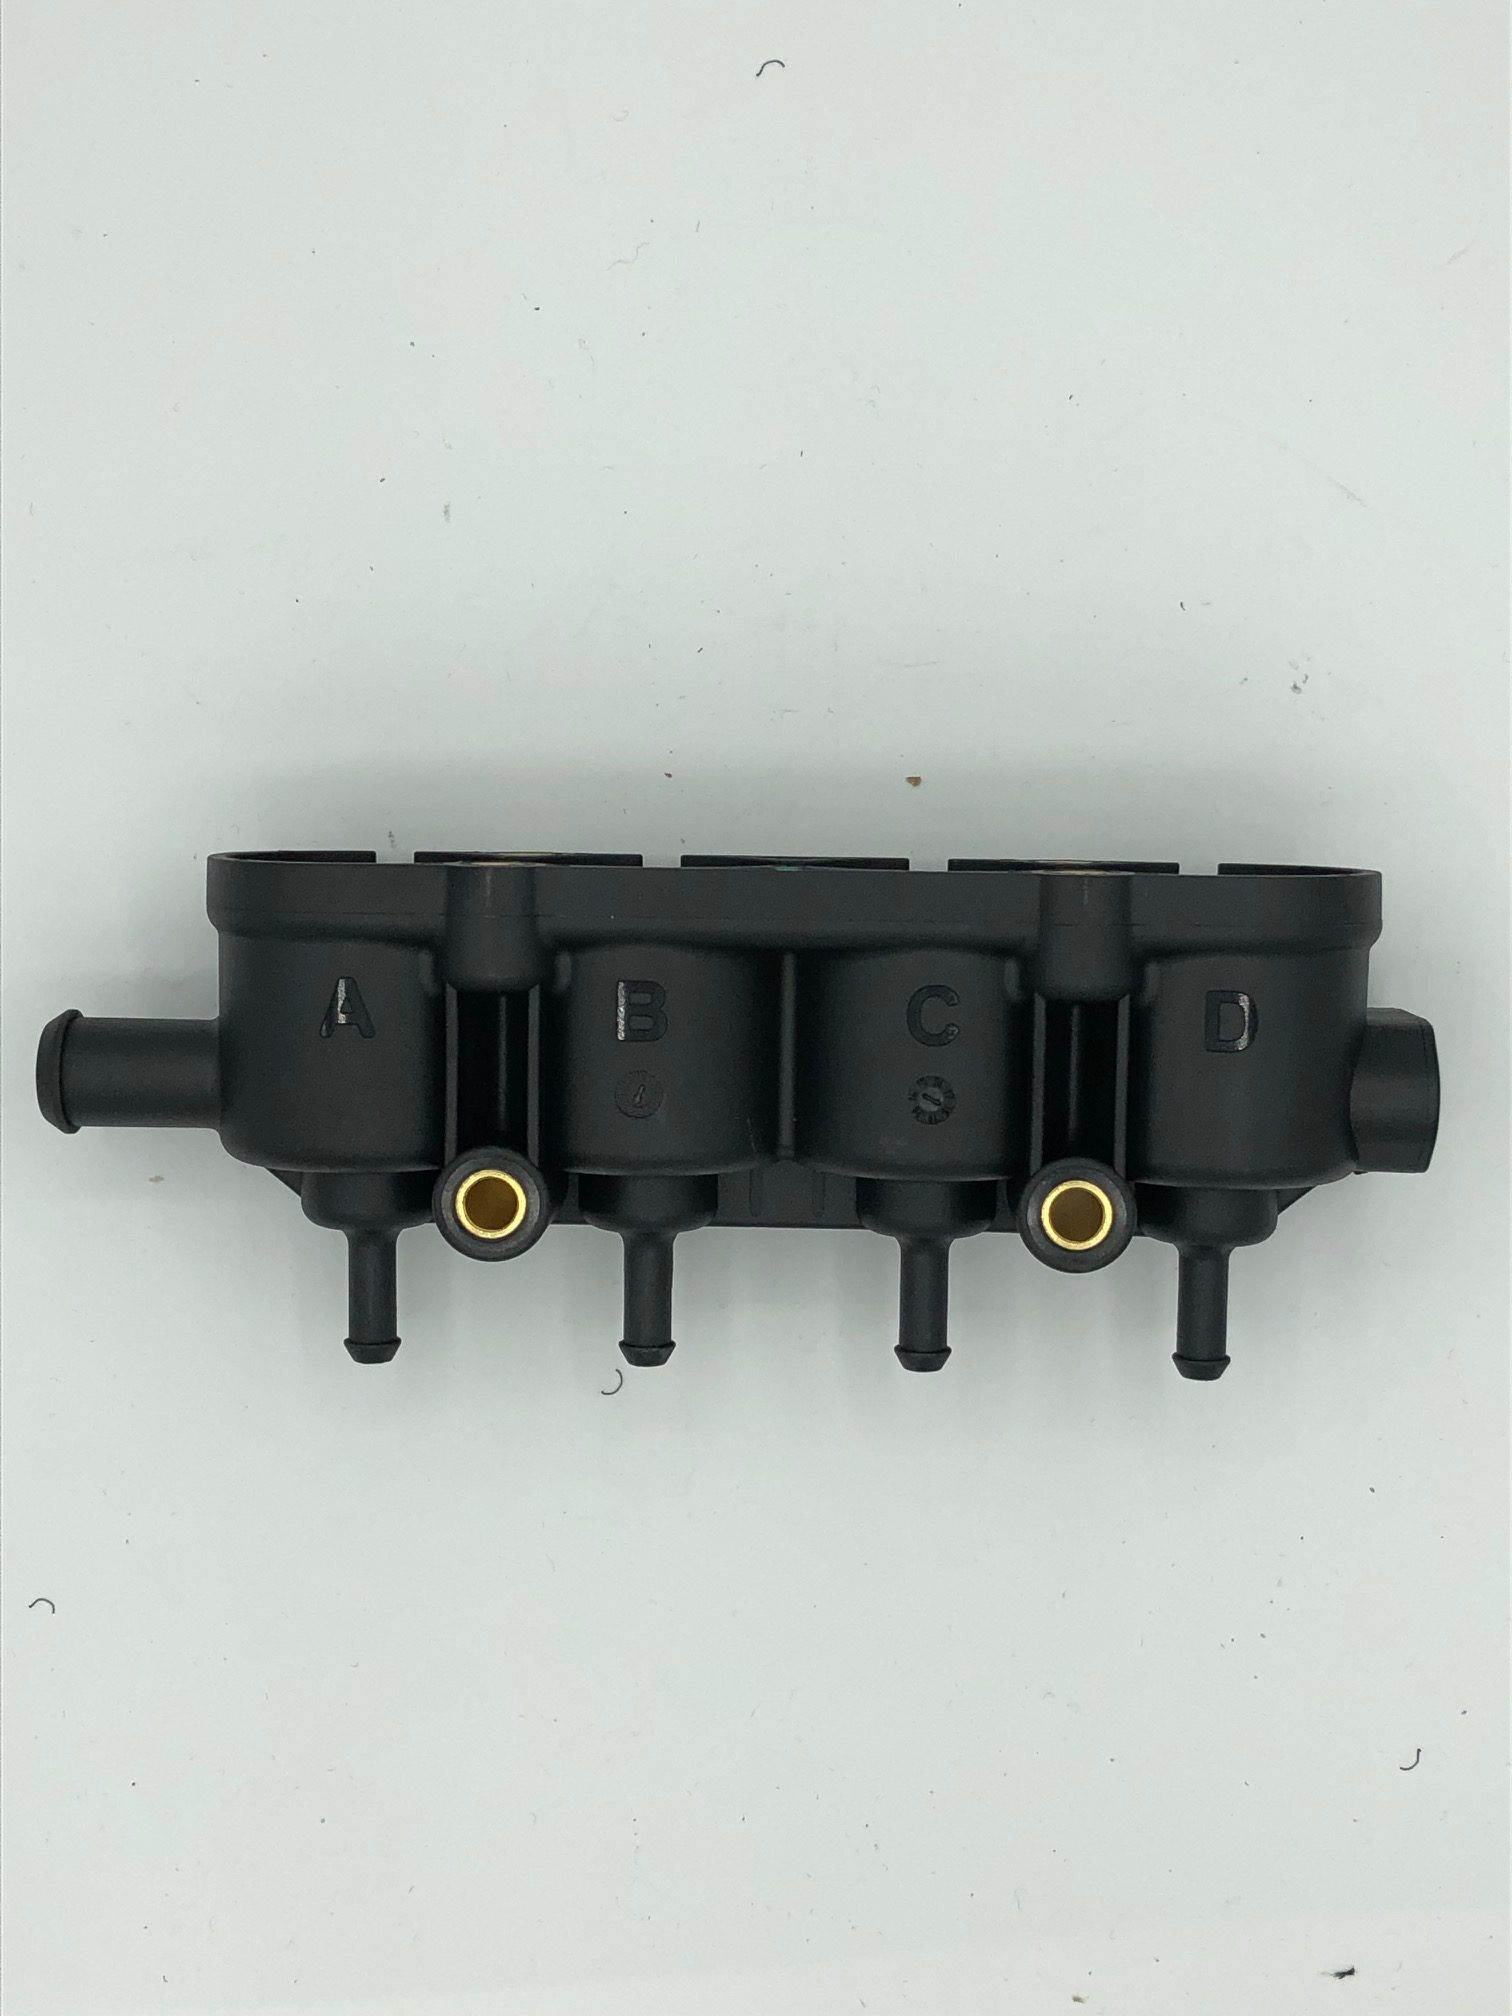 Autogas-LPG-Landirenzo-Ersatzteile-MED-Railhalter-4er-Gehäuse-mit-Sensorstutzen-1